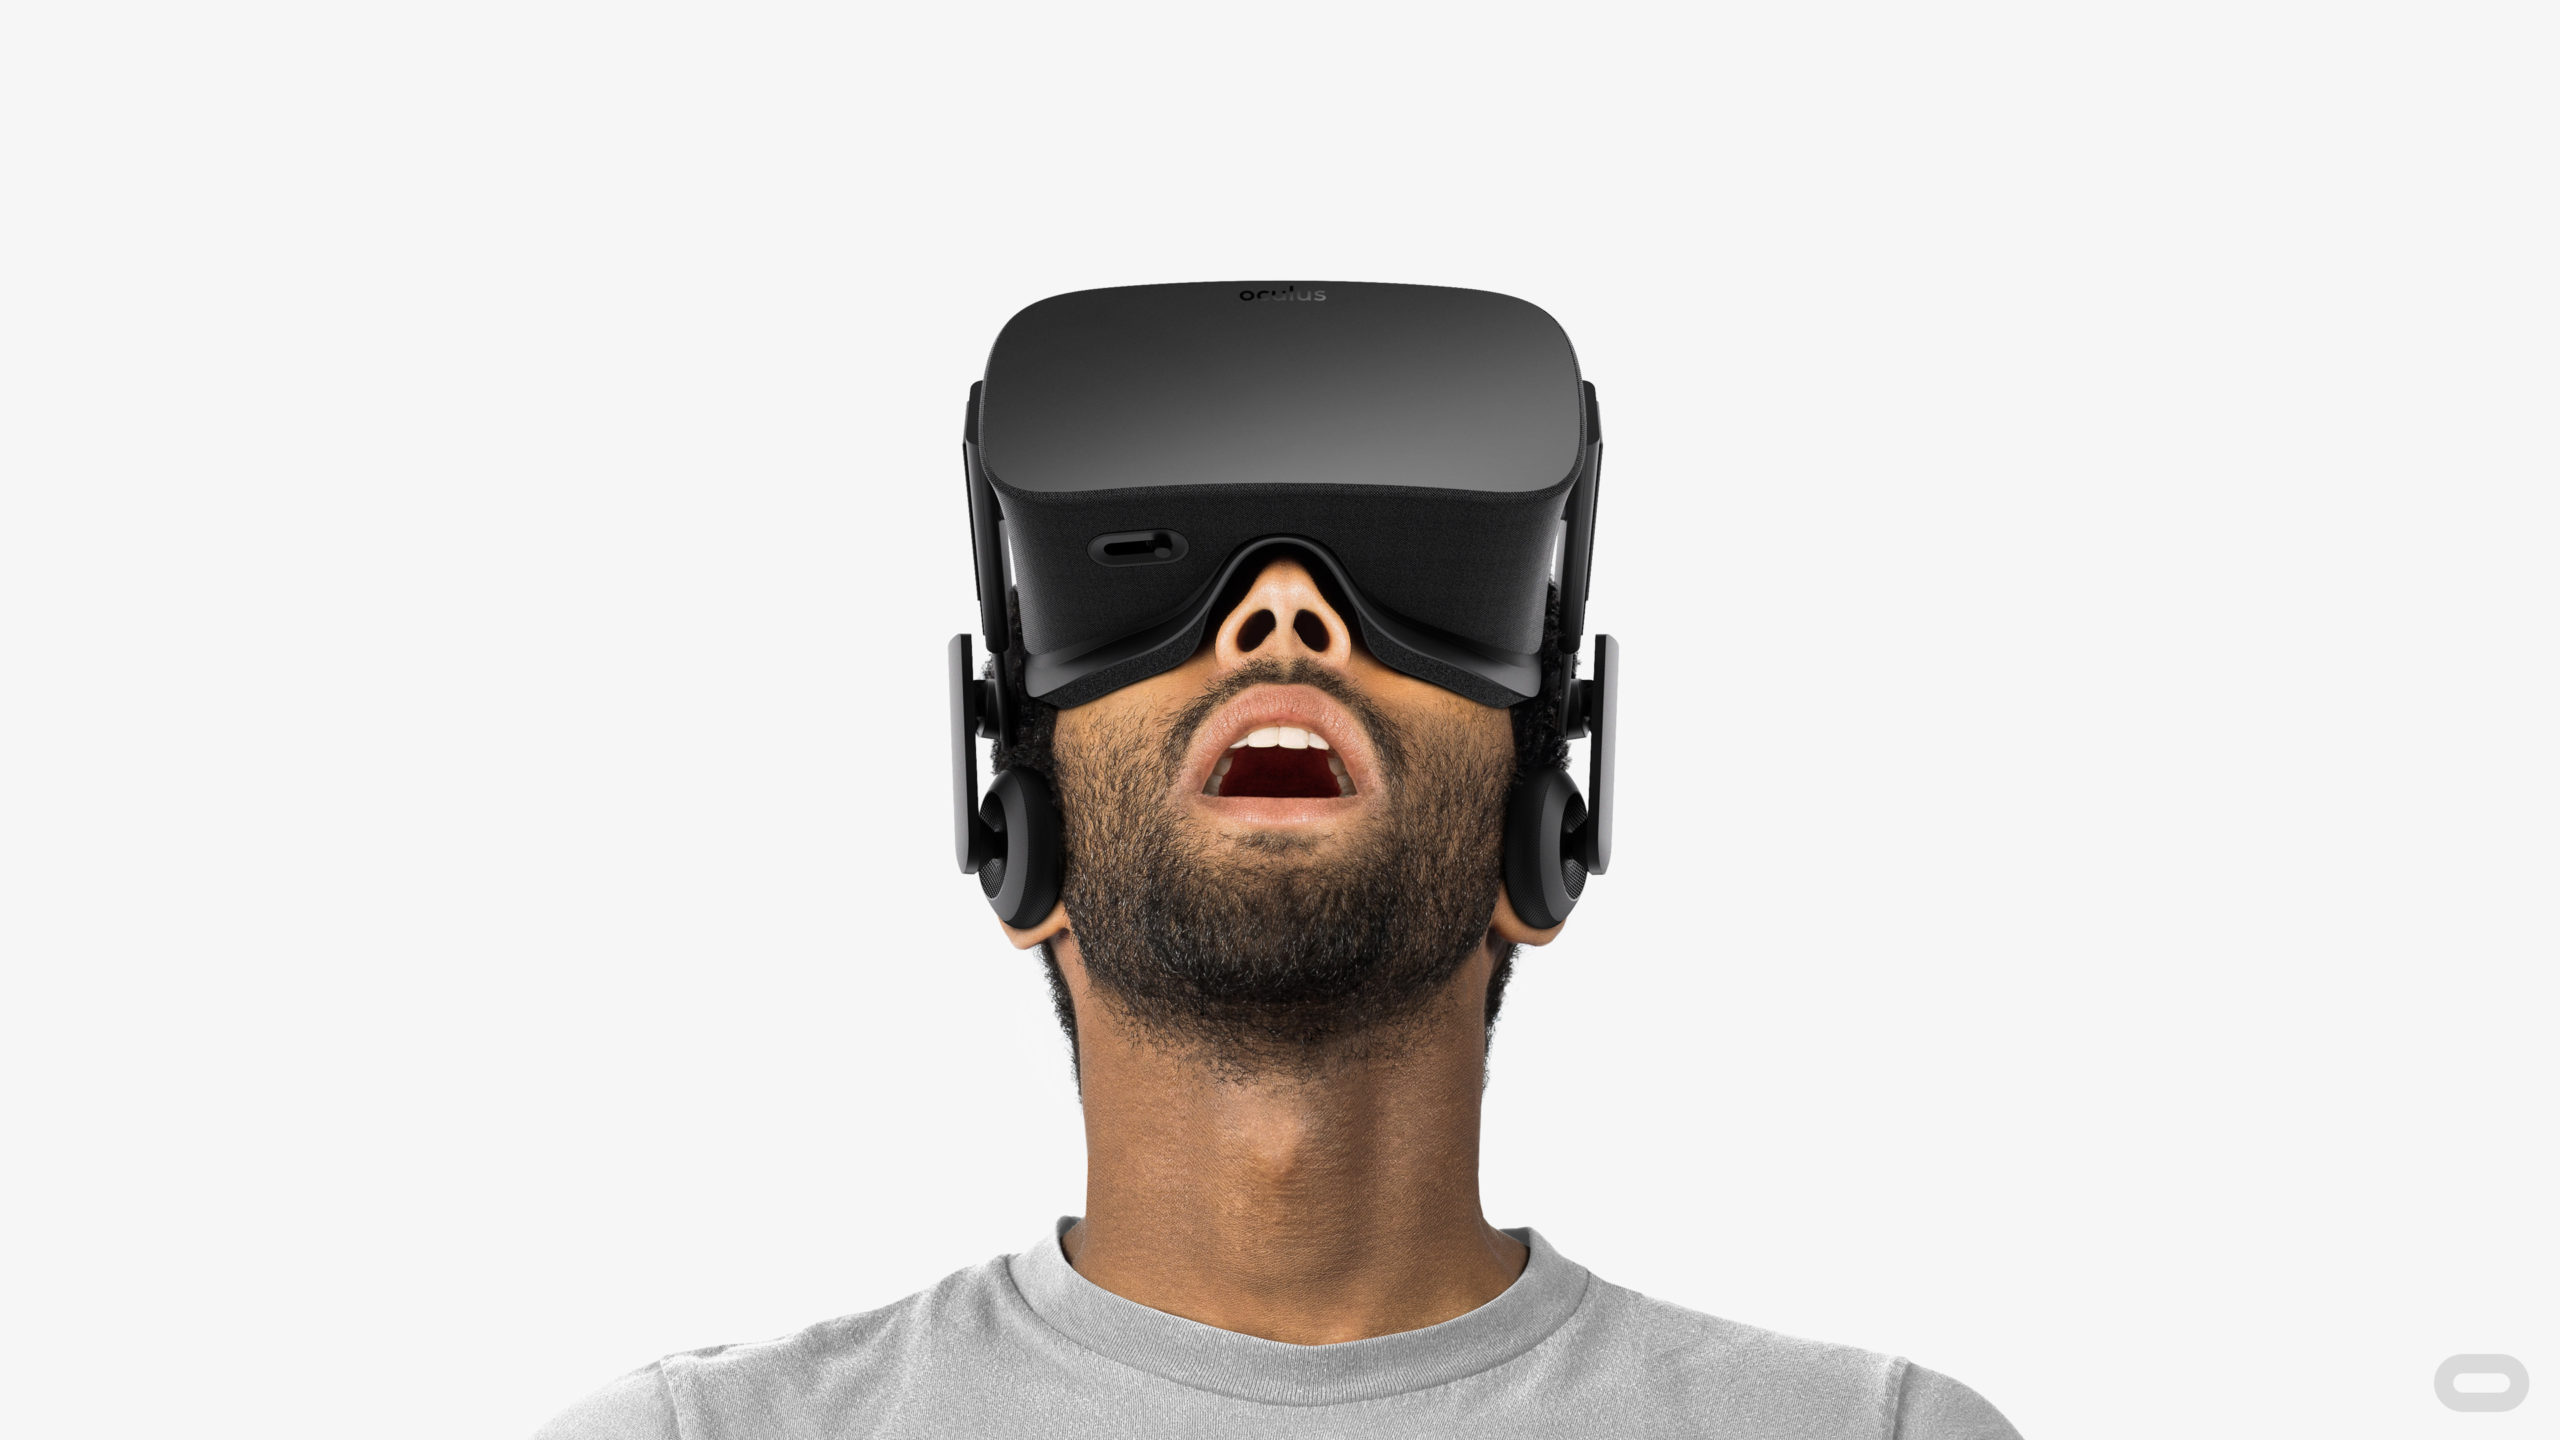 Blænding Forstad Mania Virtual Tours offline on Oculus Rift - UPDATED - 3DVista